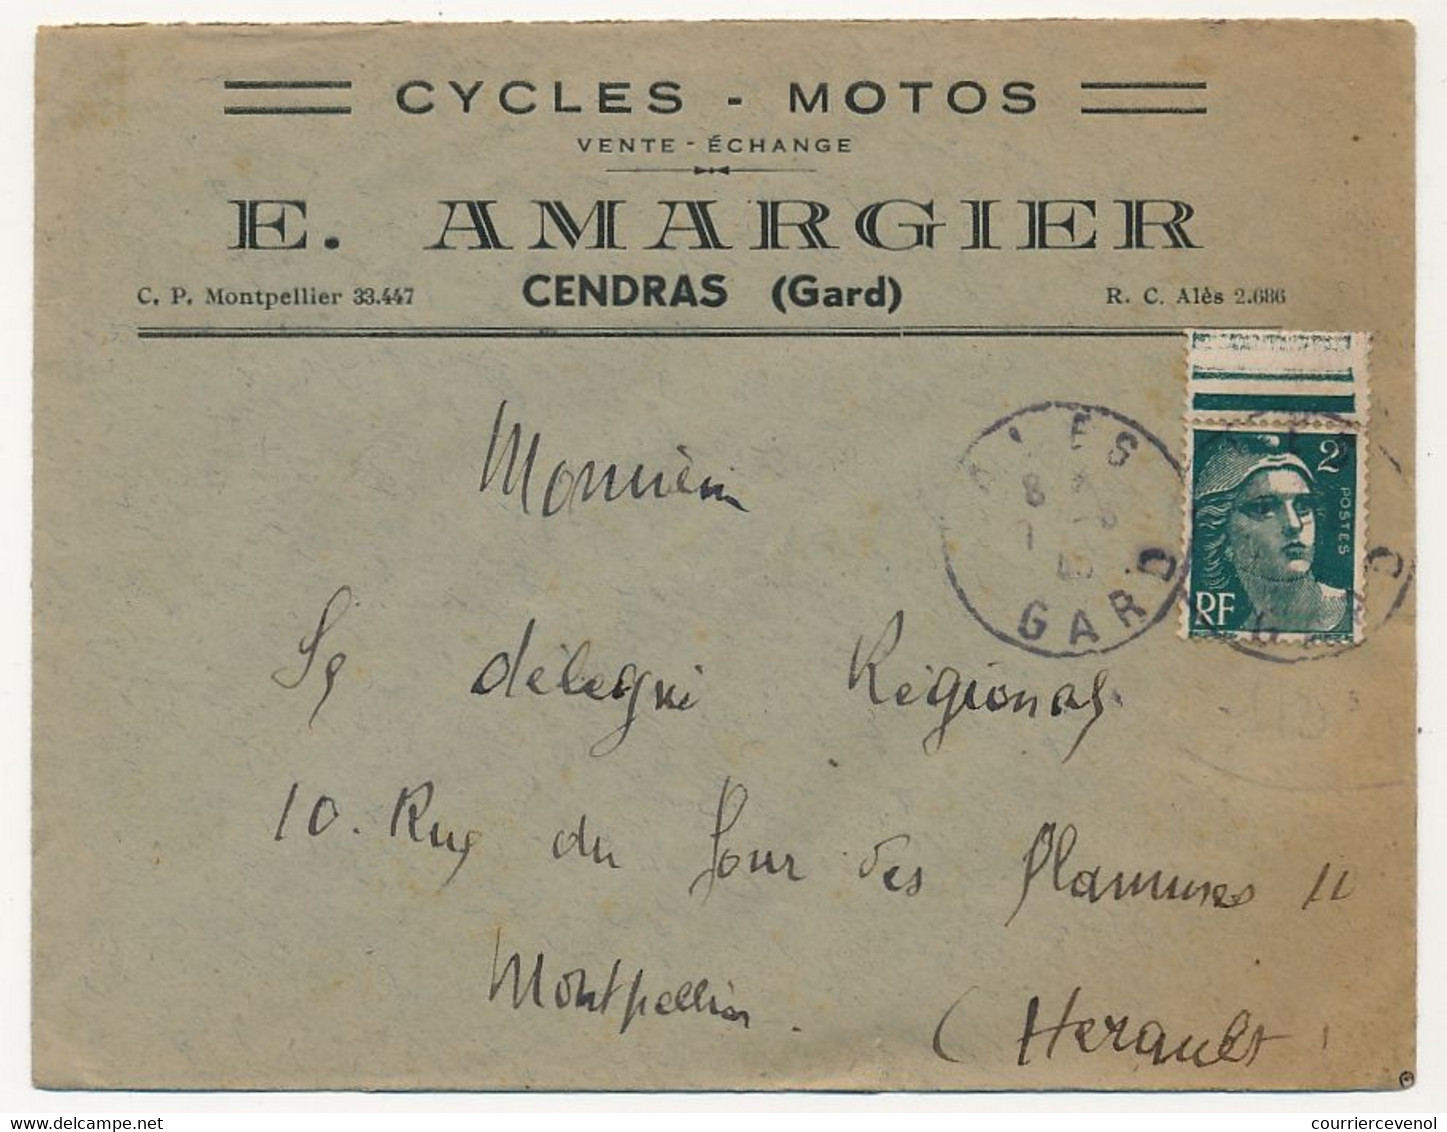 FRANCE - Env. En-tête "Cycles, Motos" E. ARMAGIER - Cendras (Gard) - Affr 2F Gandon 1945 - Sports & Tourism